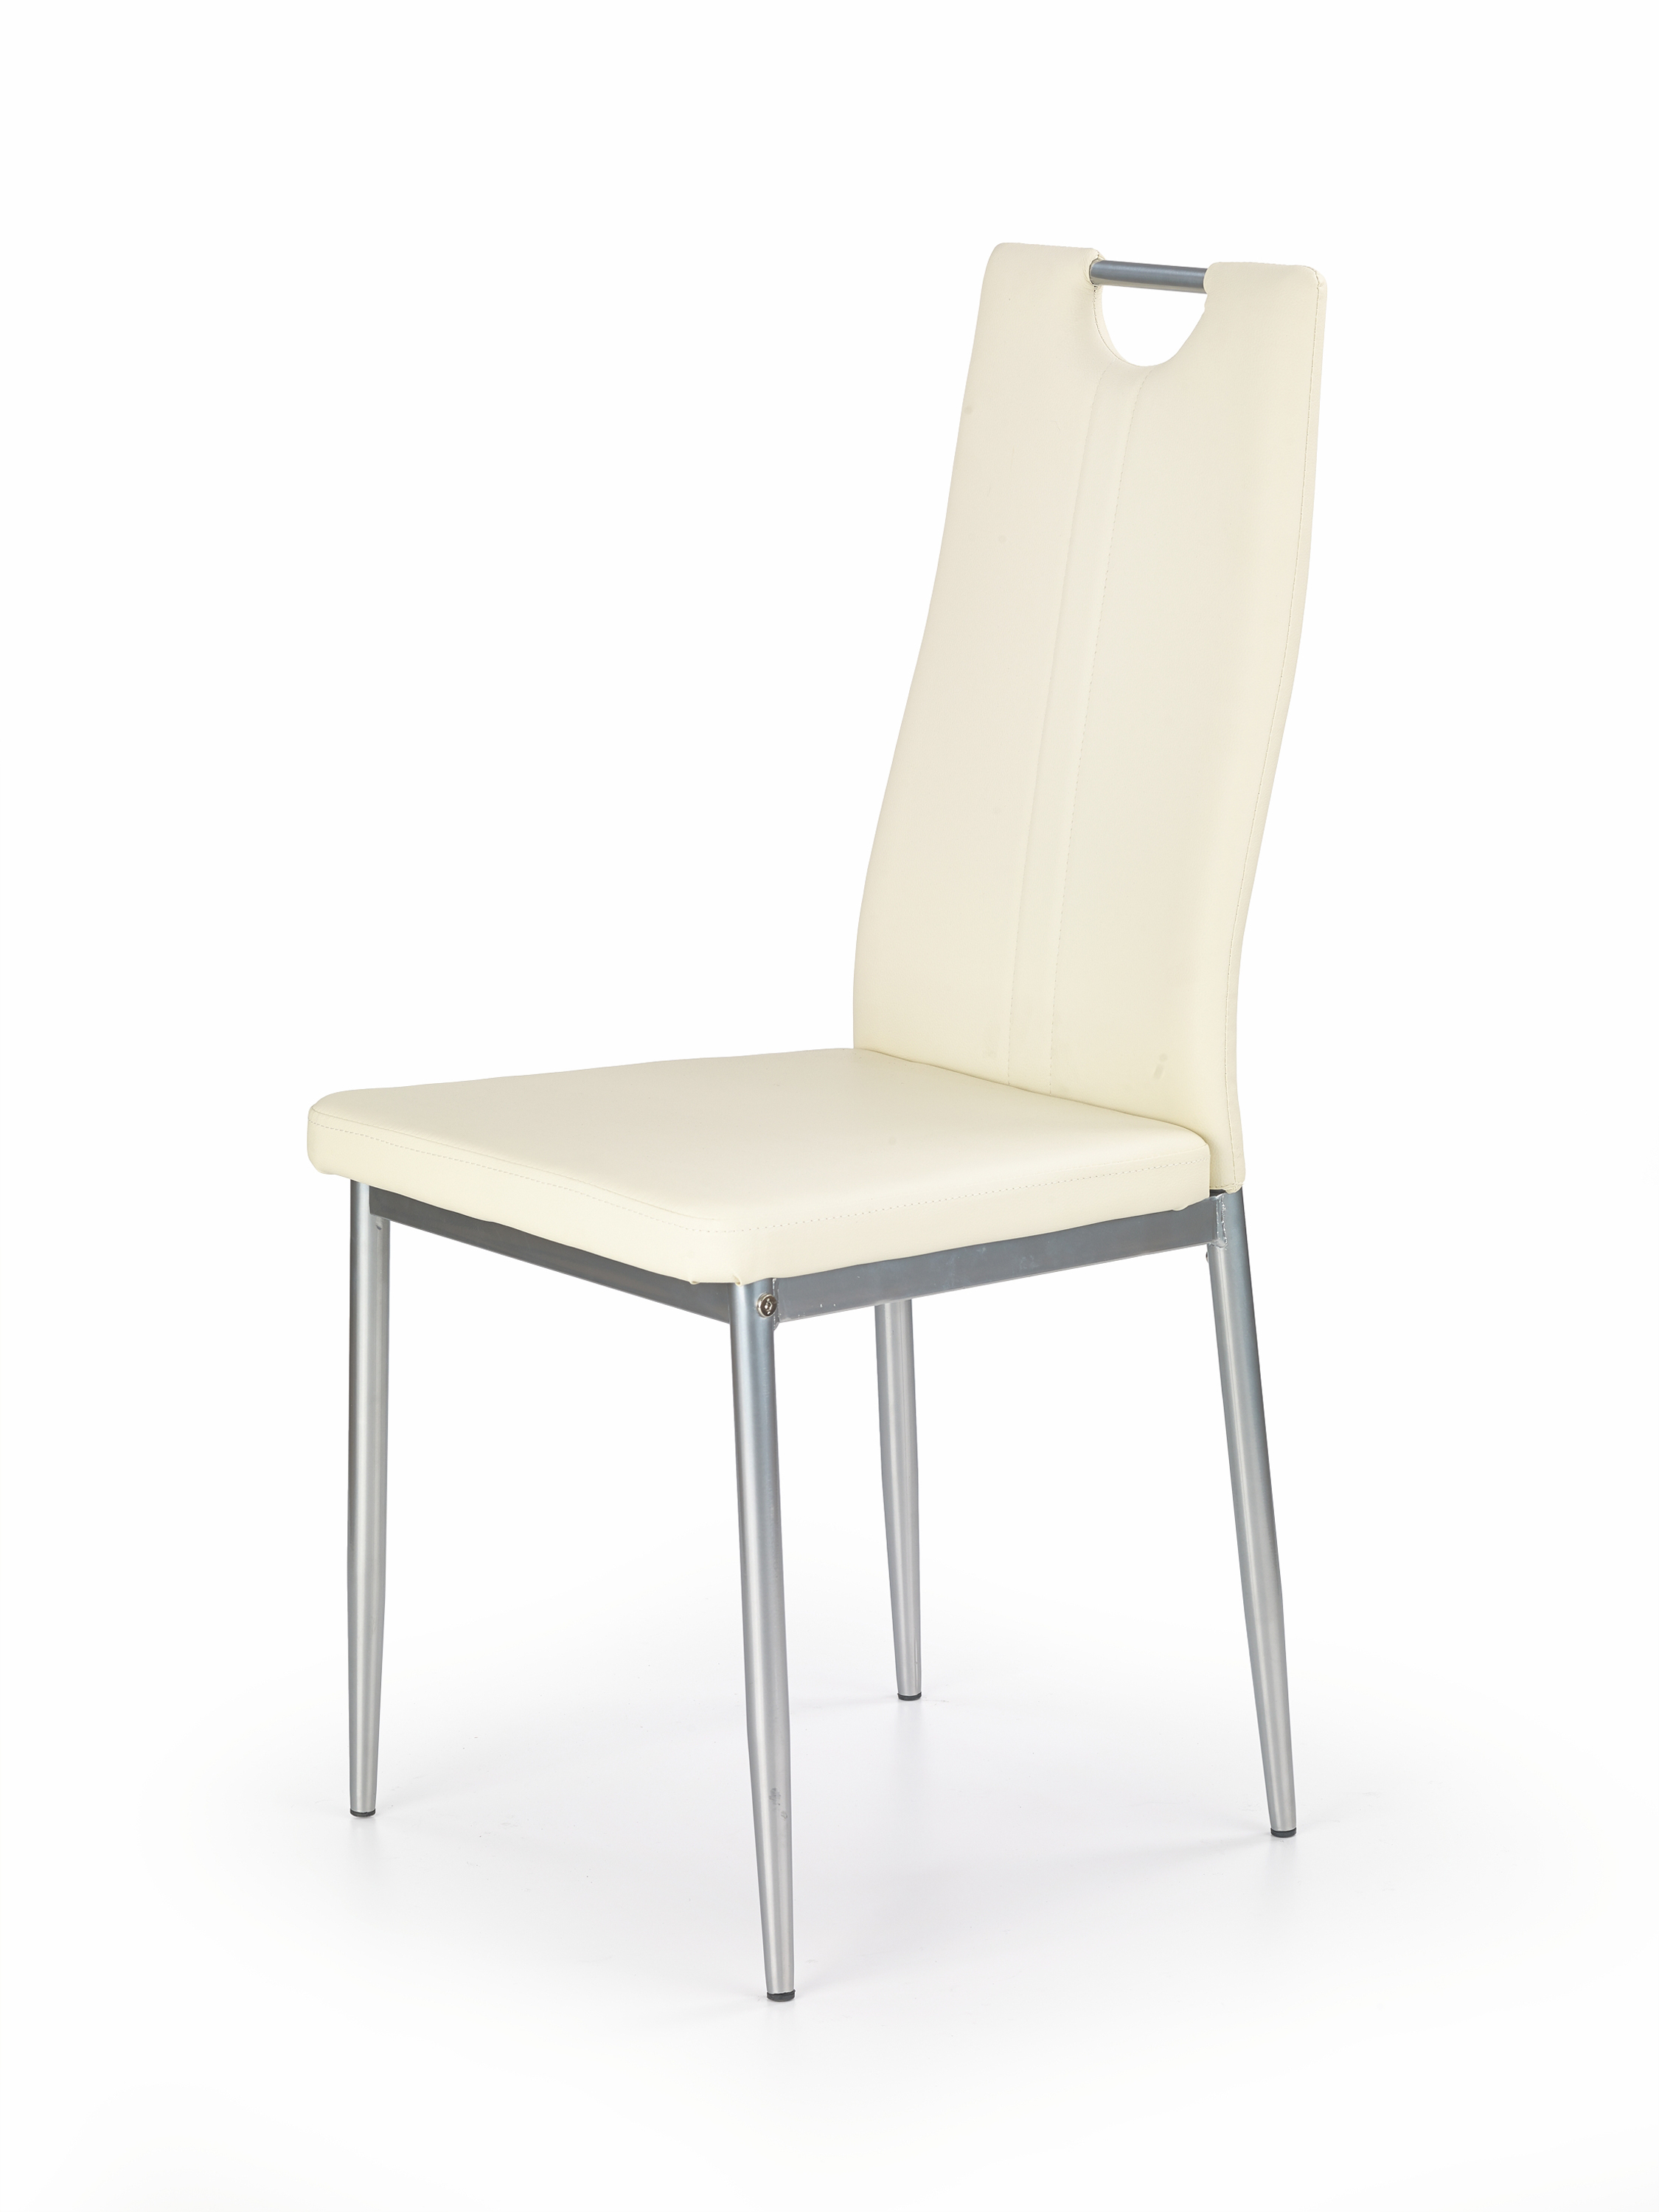 K202 krzesło kremowy